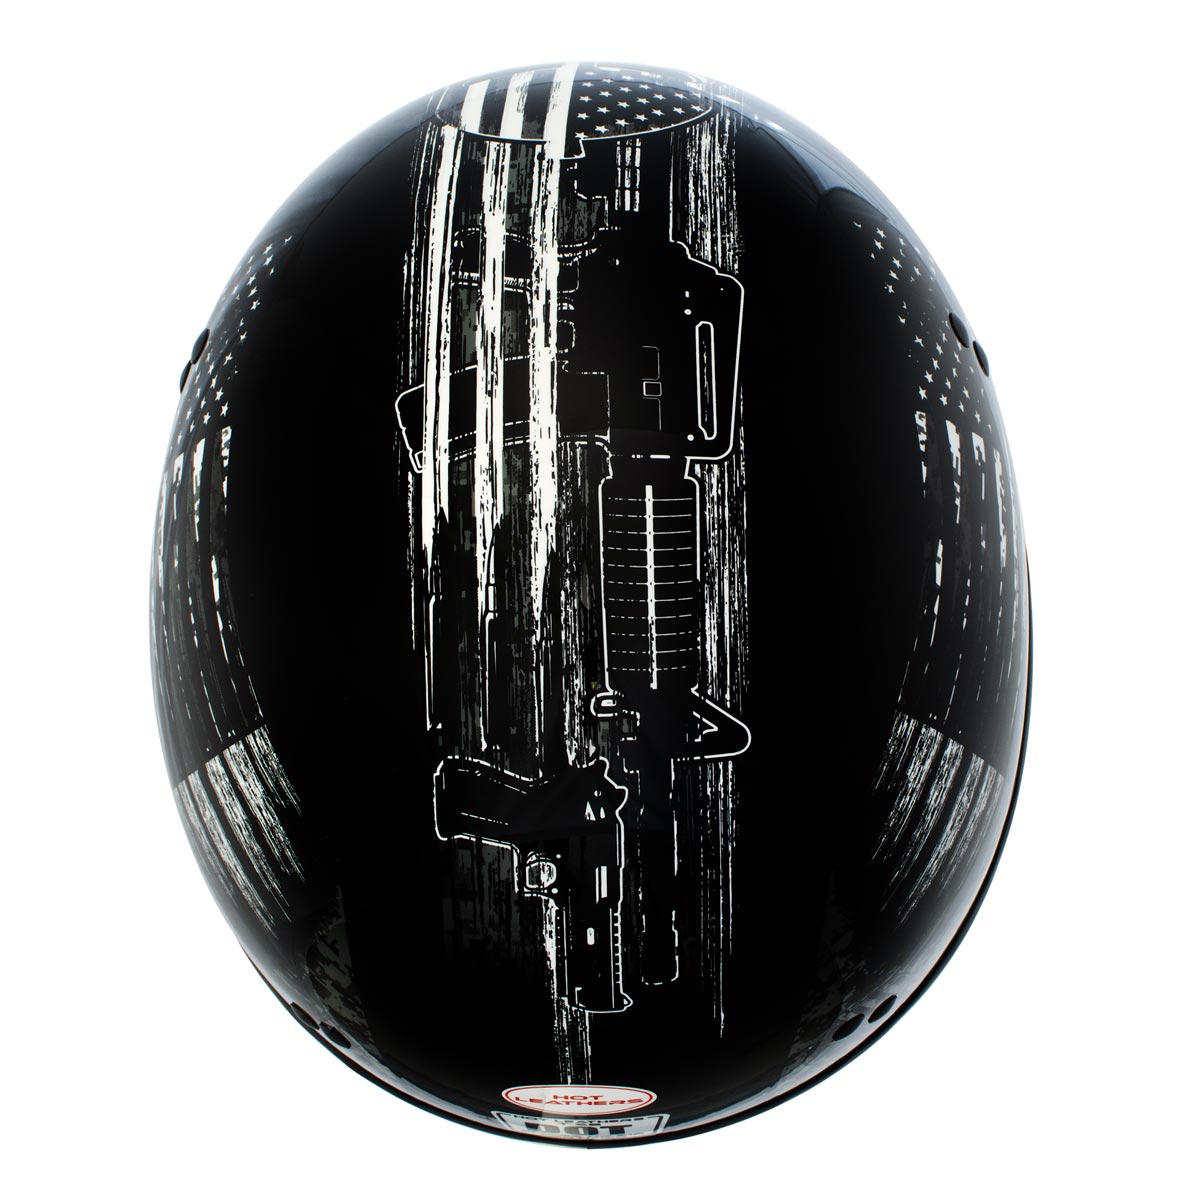 Hot Leathers HLD1043 Gloss Black 'Black and White Warrior Bullet' Advanced DOT Skull Half Helmet for Men and Women